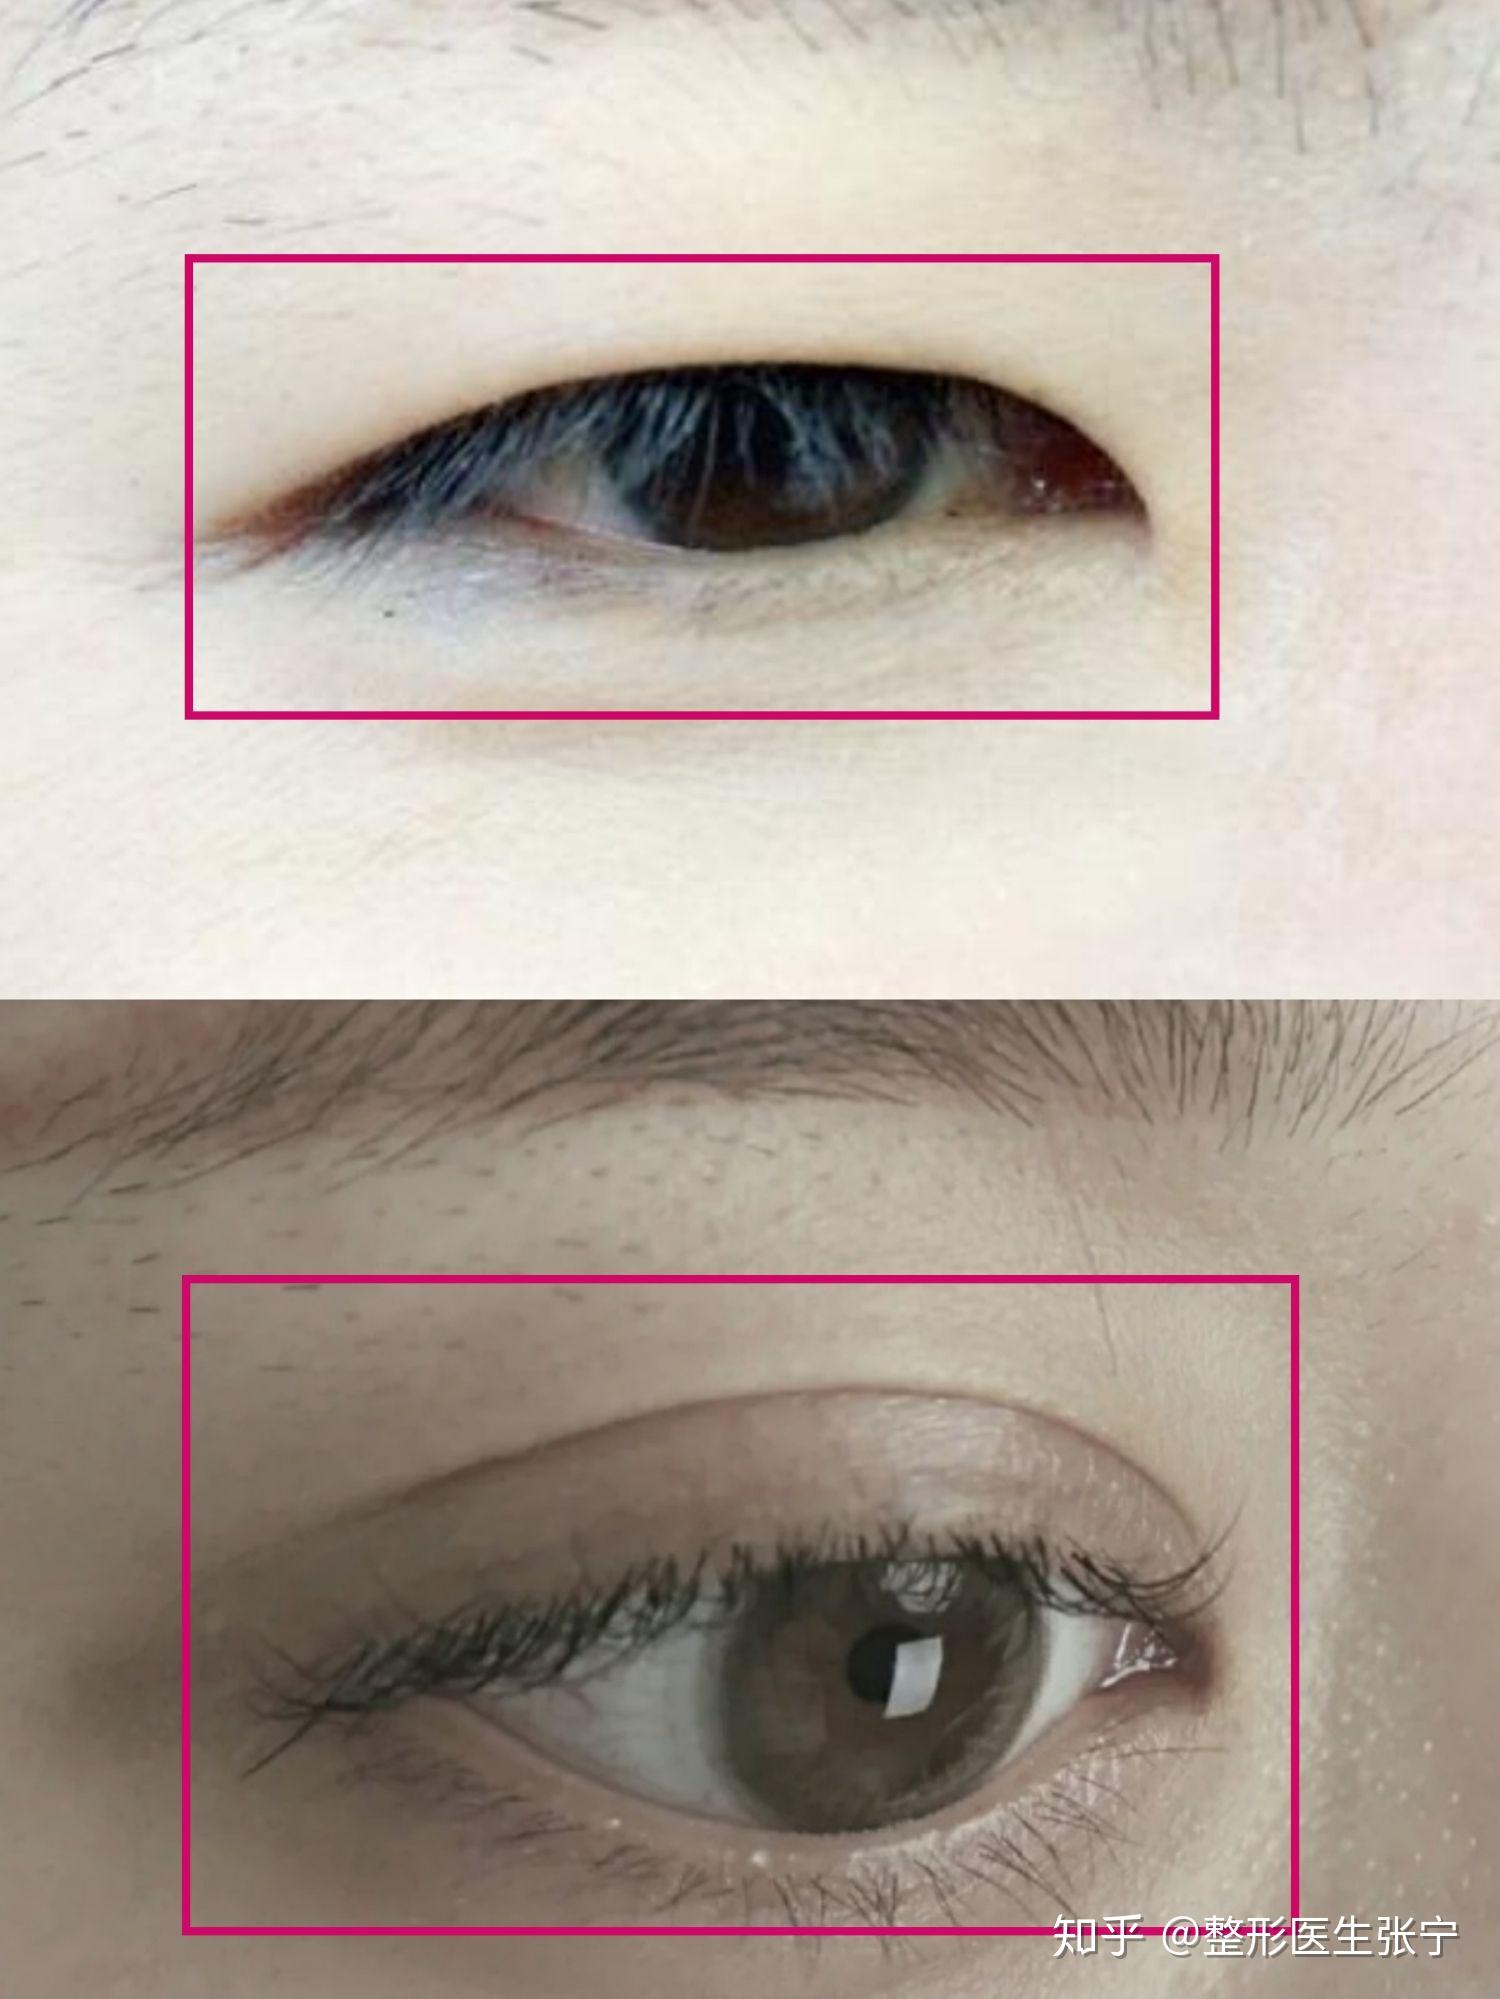 90%的人都喜欢大眼睛，深度分析双眼皮大眼睛的秘密 - 知乎